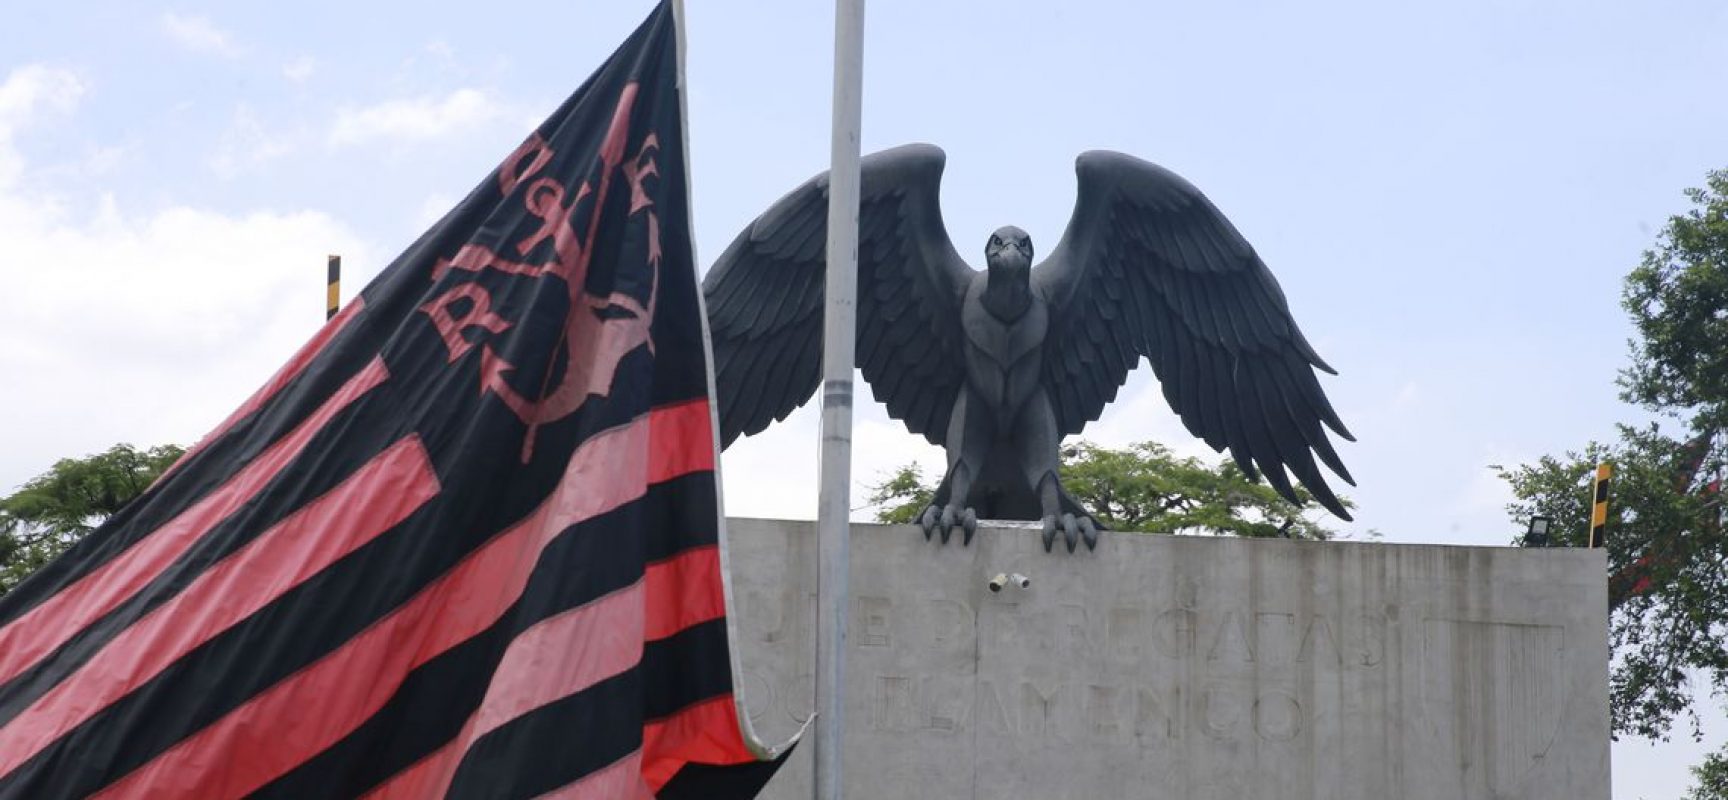 Flamengo divulga lista com nomes dos atletas mortos em incêndio